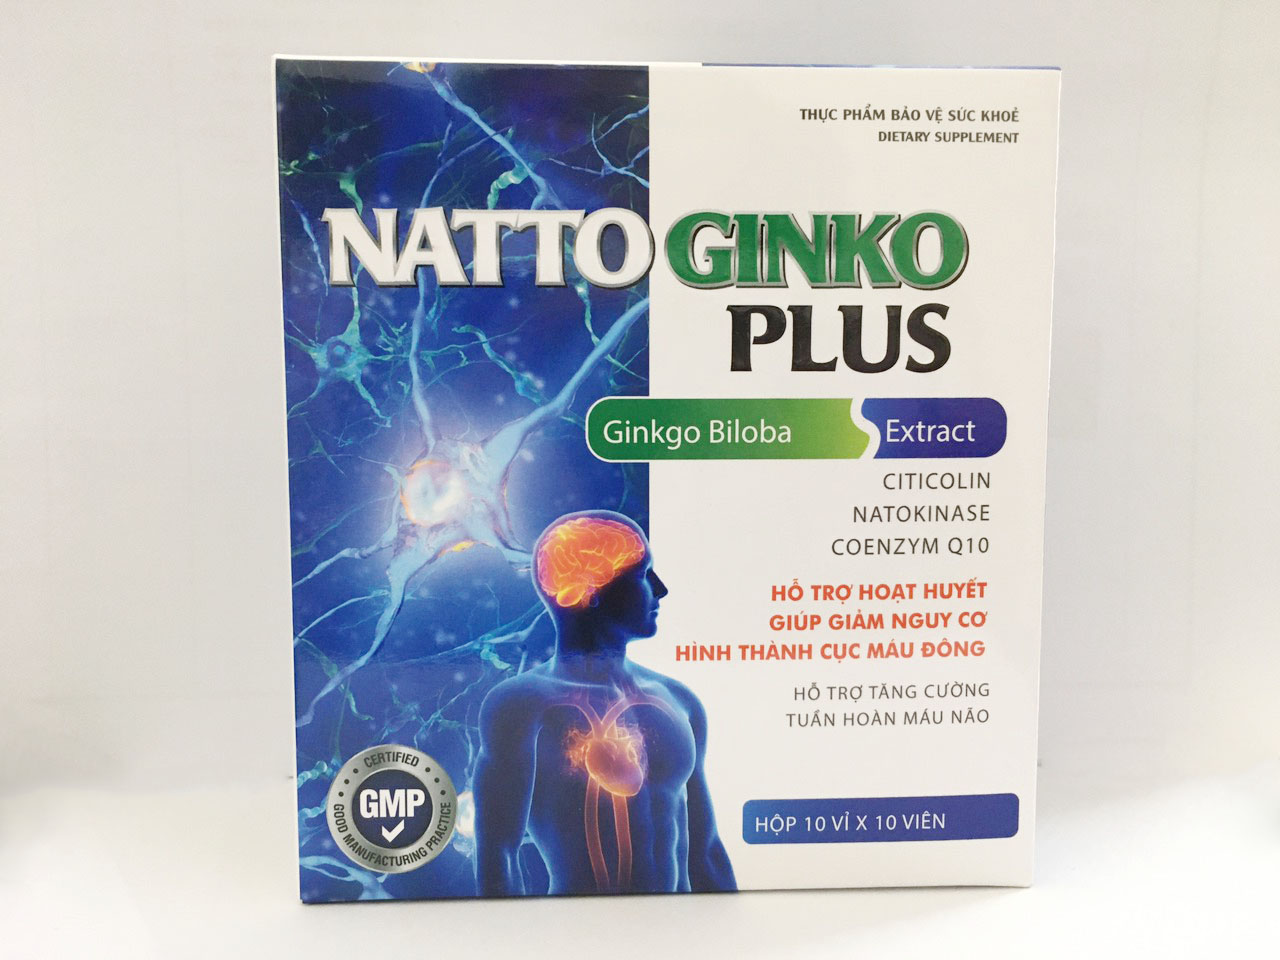 Natto Ginko Plus (Hỗ trợ hoạt huyết tang cường tuần hoàn máu não giúp cải thiện các triệu chứng: hoa mắt chóng mặt đau đầu mất ngủ suy giảm trí nhớ đau mỏi vai gáy rối loạn tiền đình do thiểu năng tuần hoàn não)